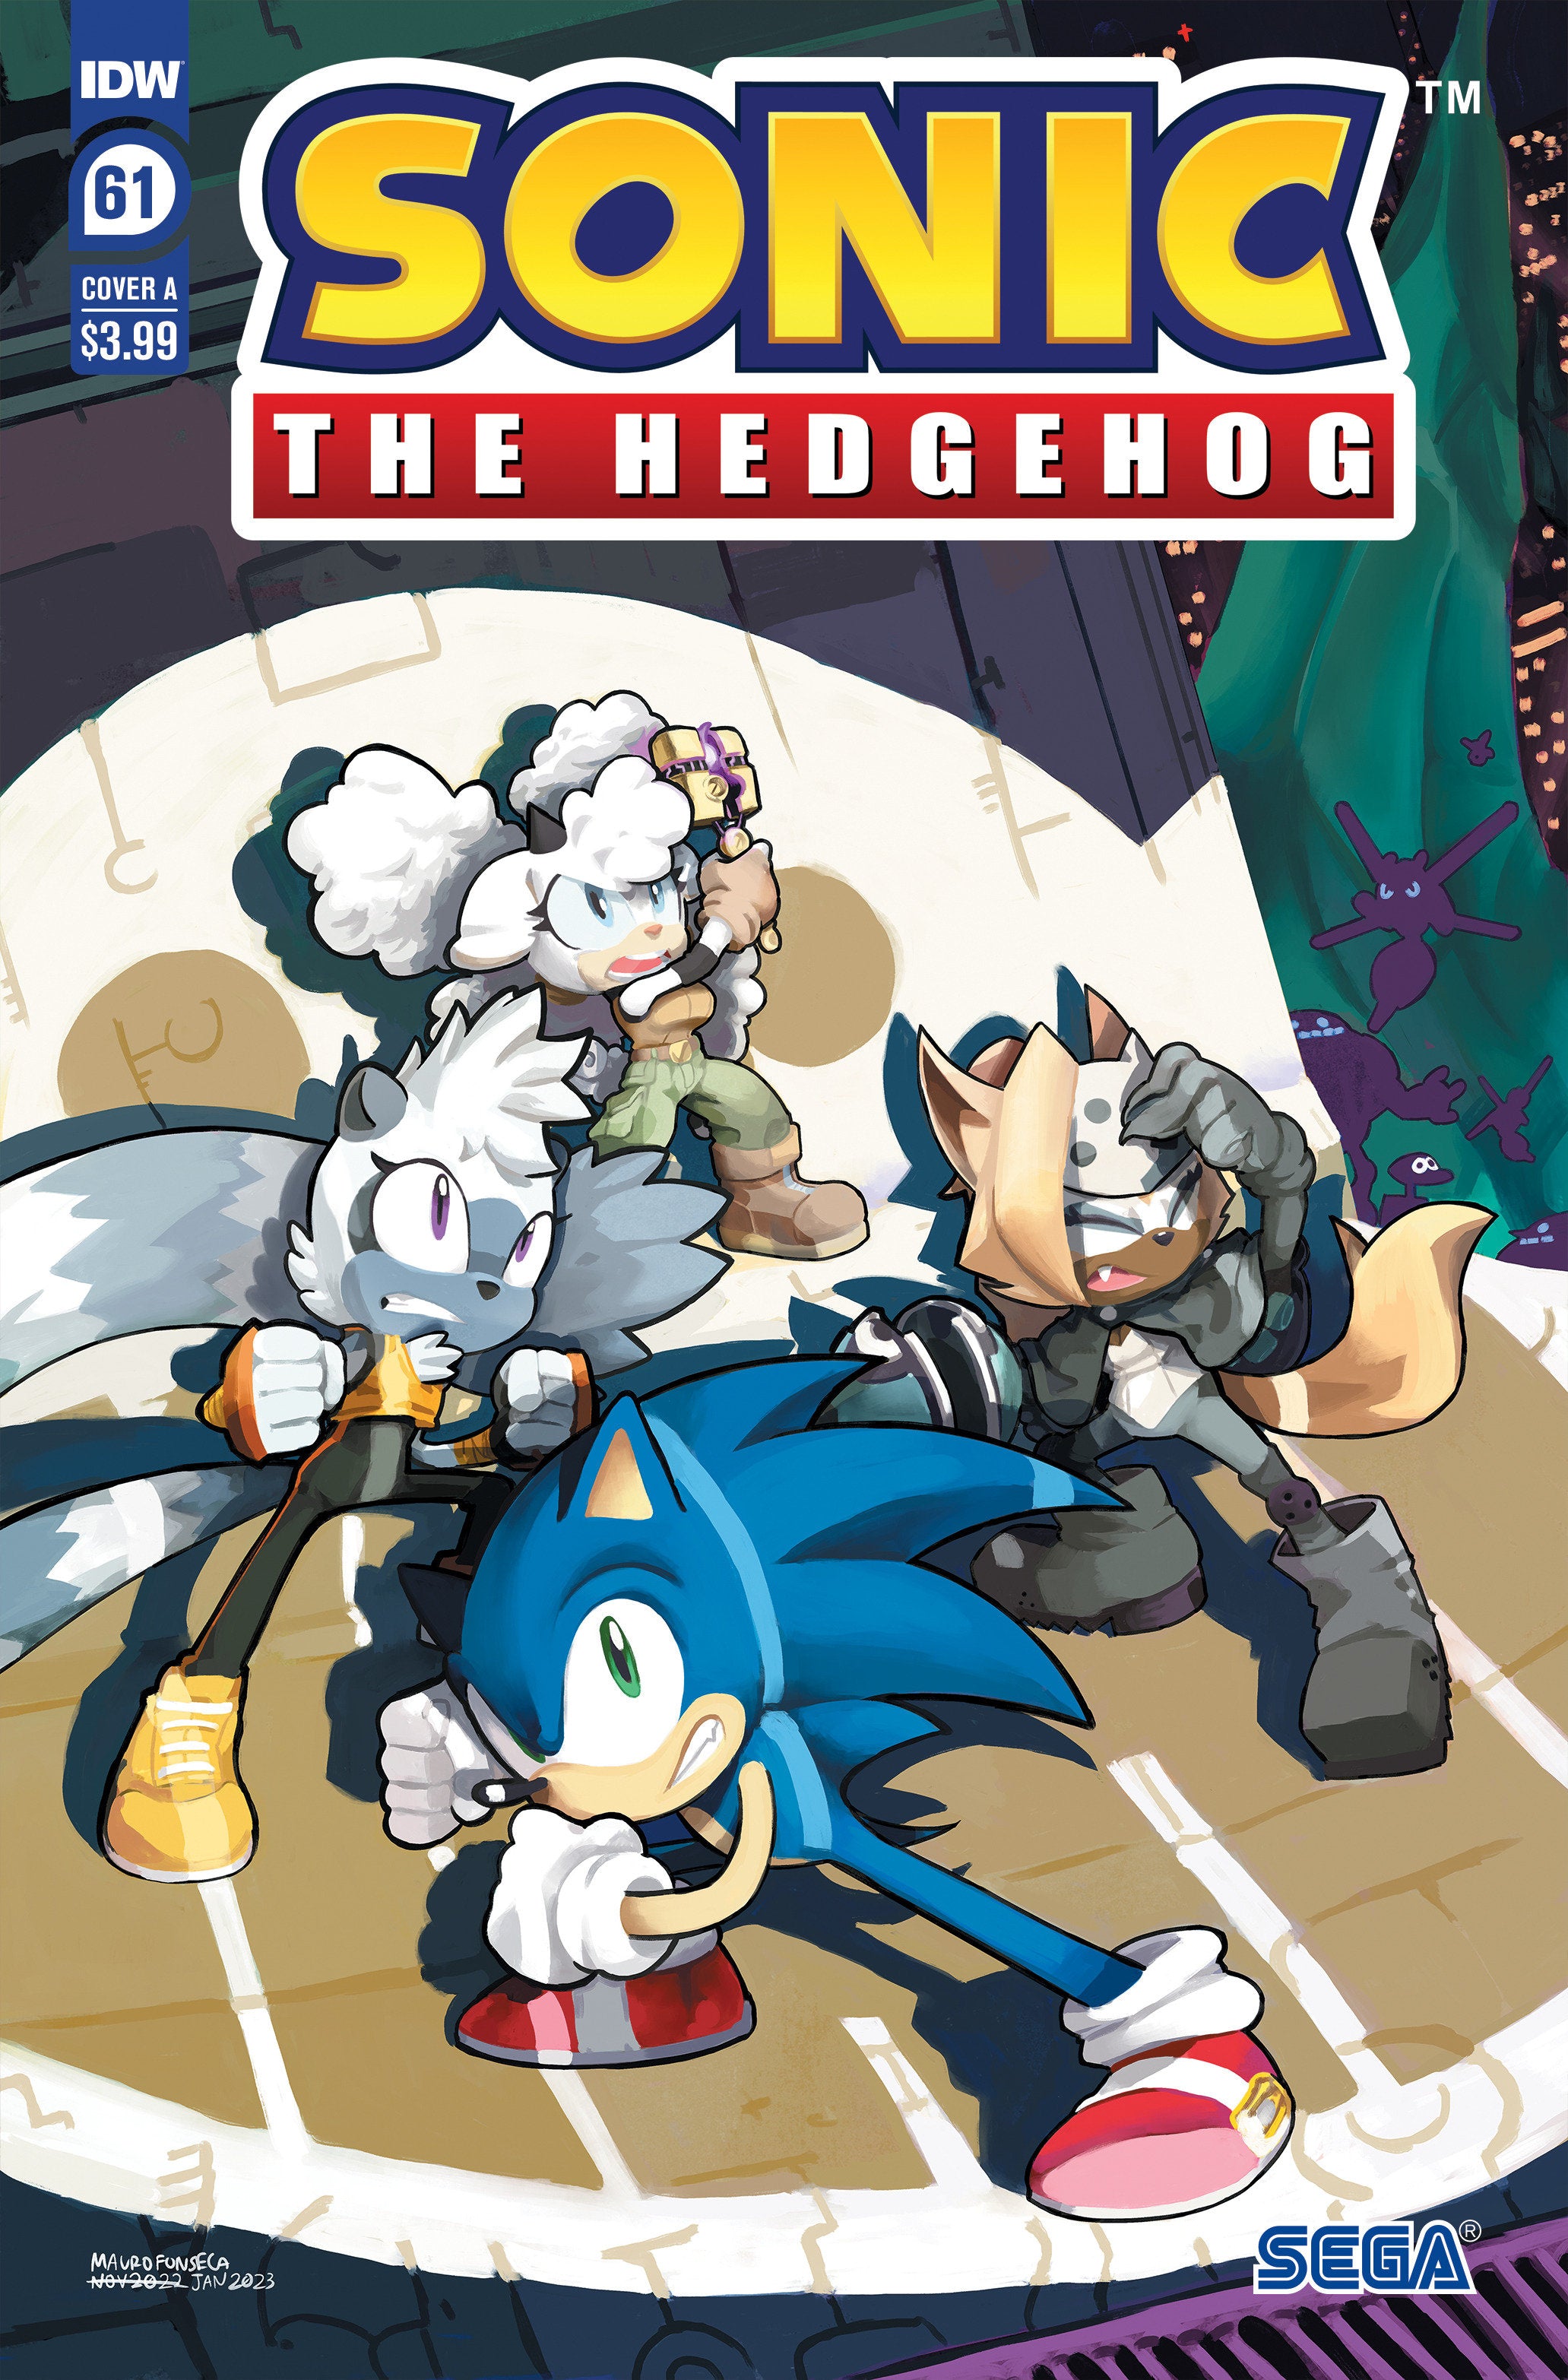 Sonic The Hedgehog #61 Cover A (Fonseca) | L.A. Mood Comics and Games